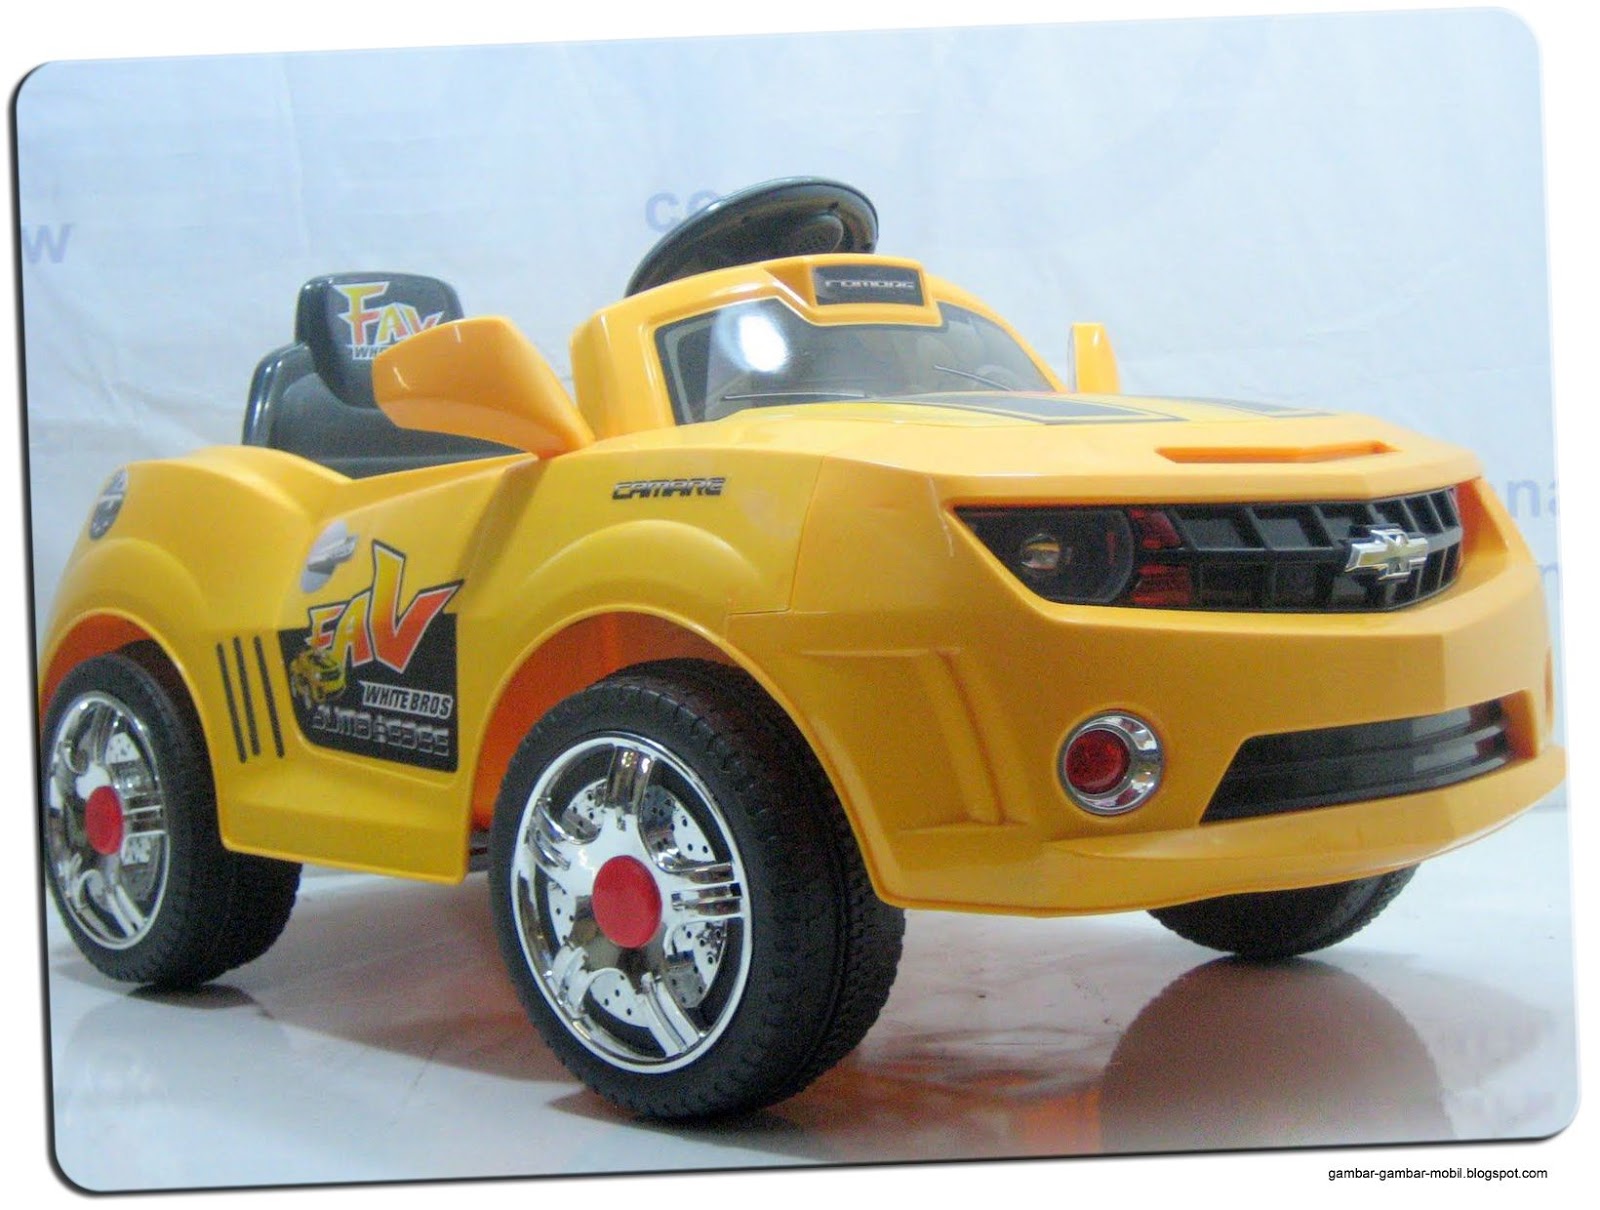  Mobil  Mainan  Anak Yang Bisa Dinaiki Gambar  Gambar  Mobil 